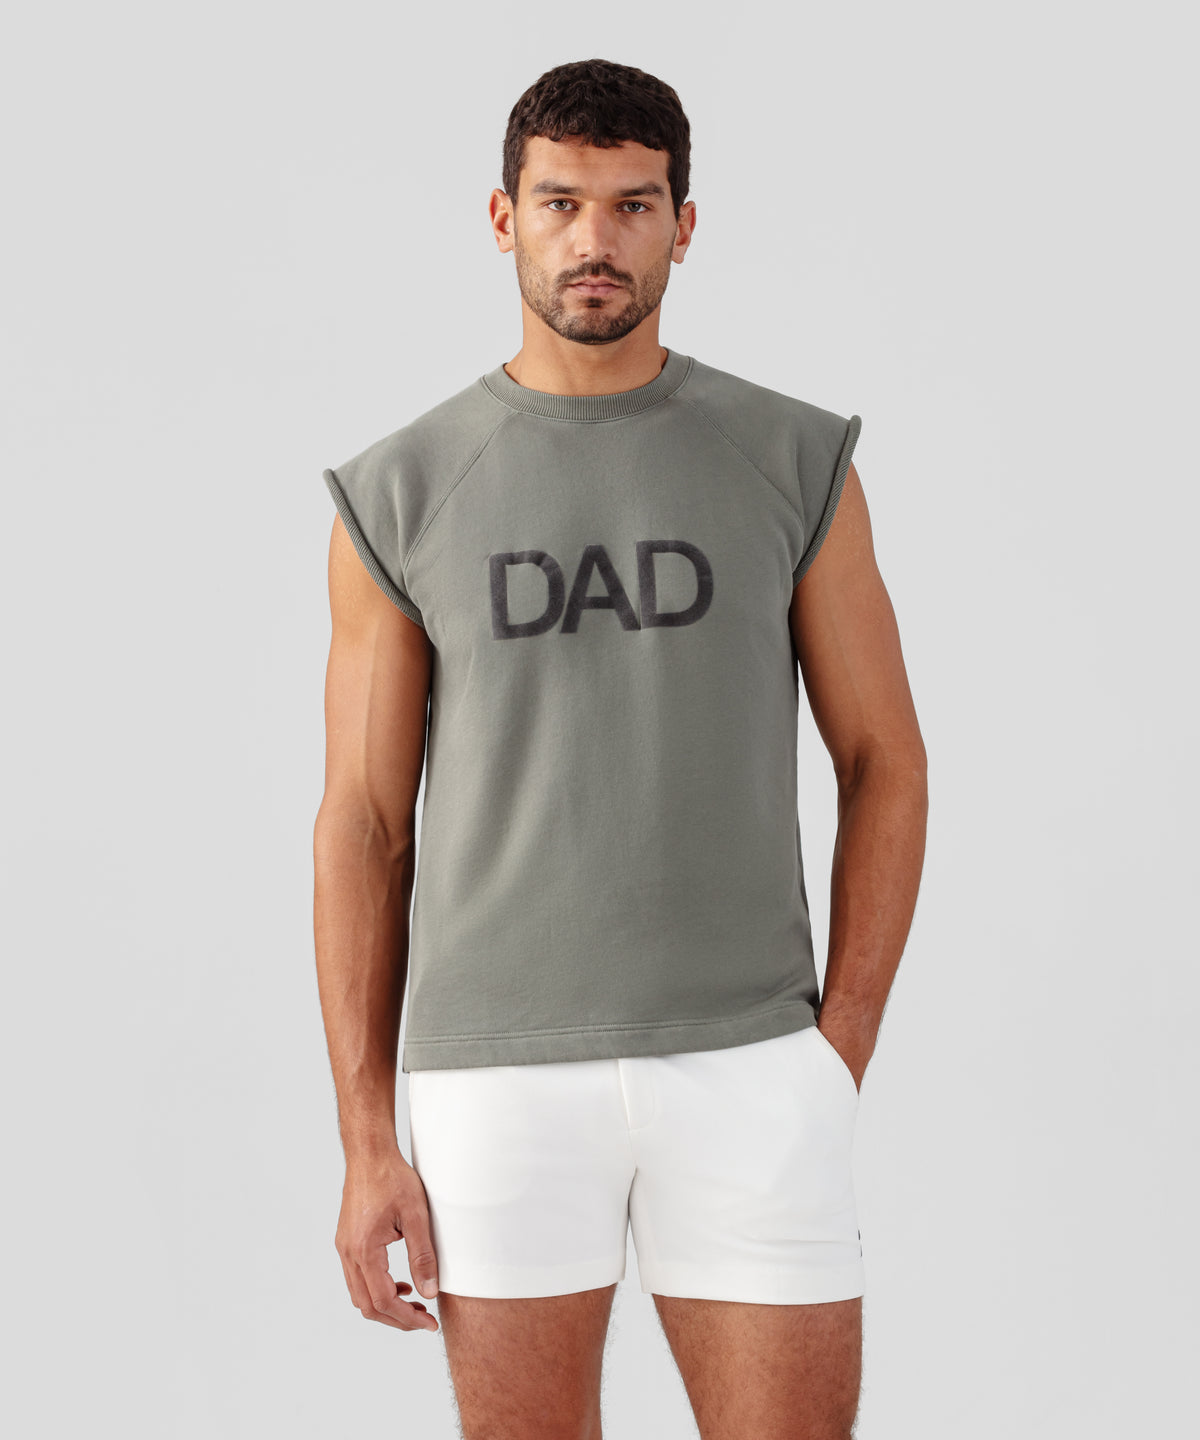 Sweatshirt sans manches en coton organique à imprimé DAD: Vert militaire